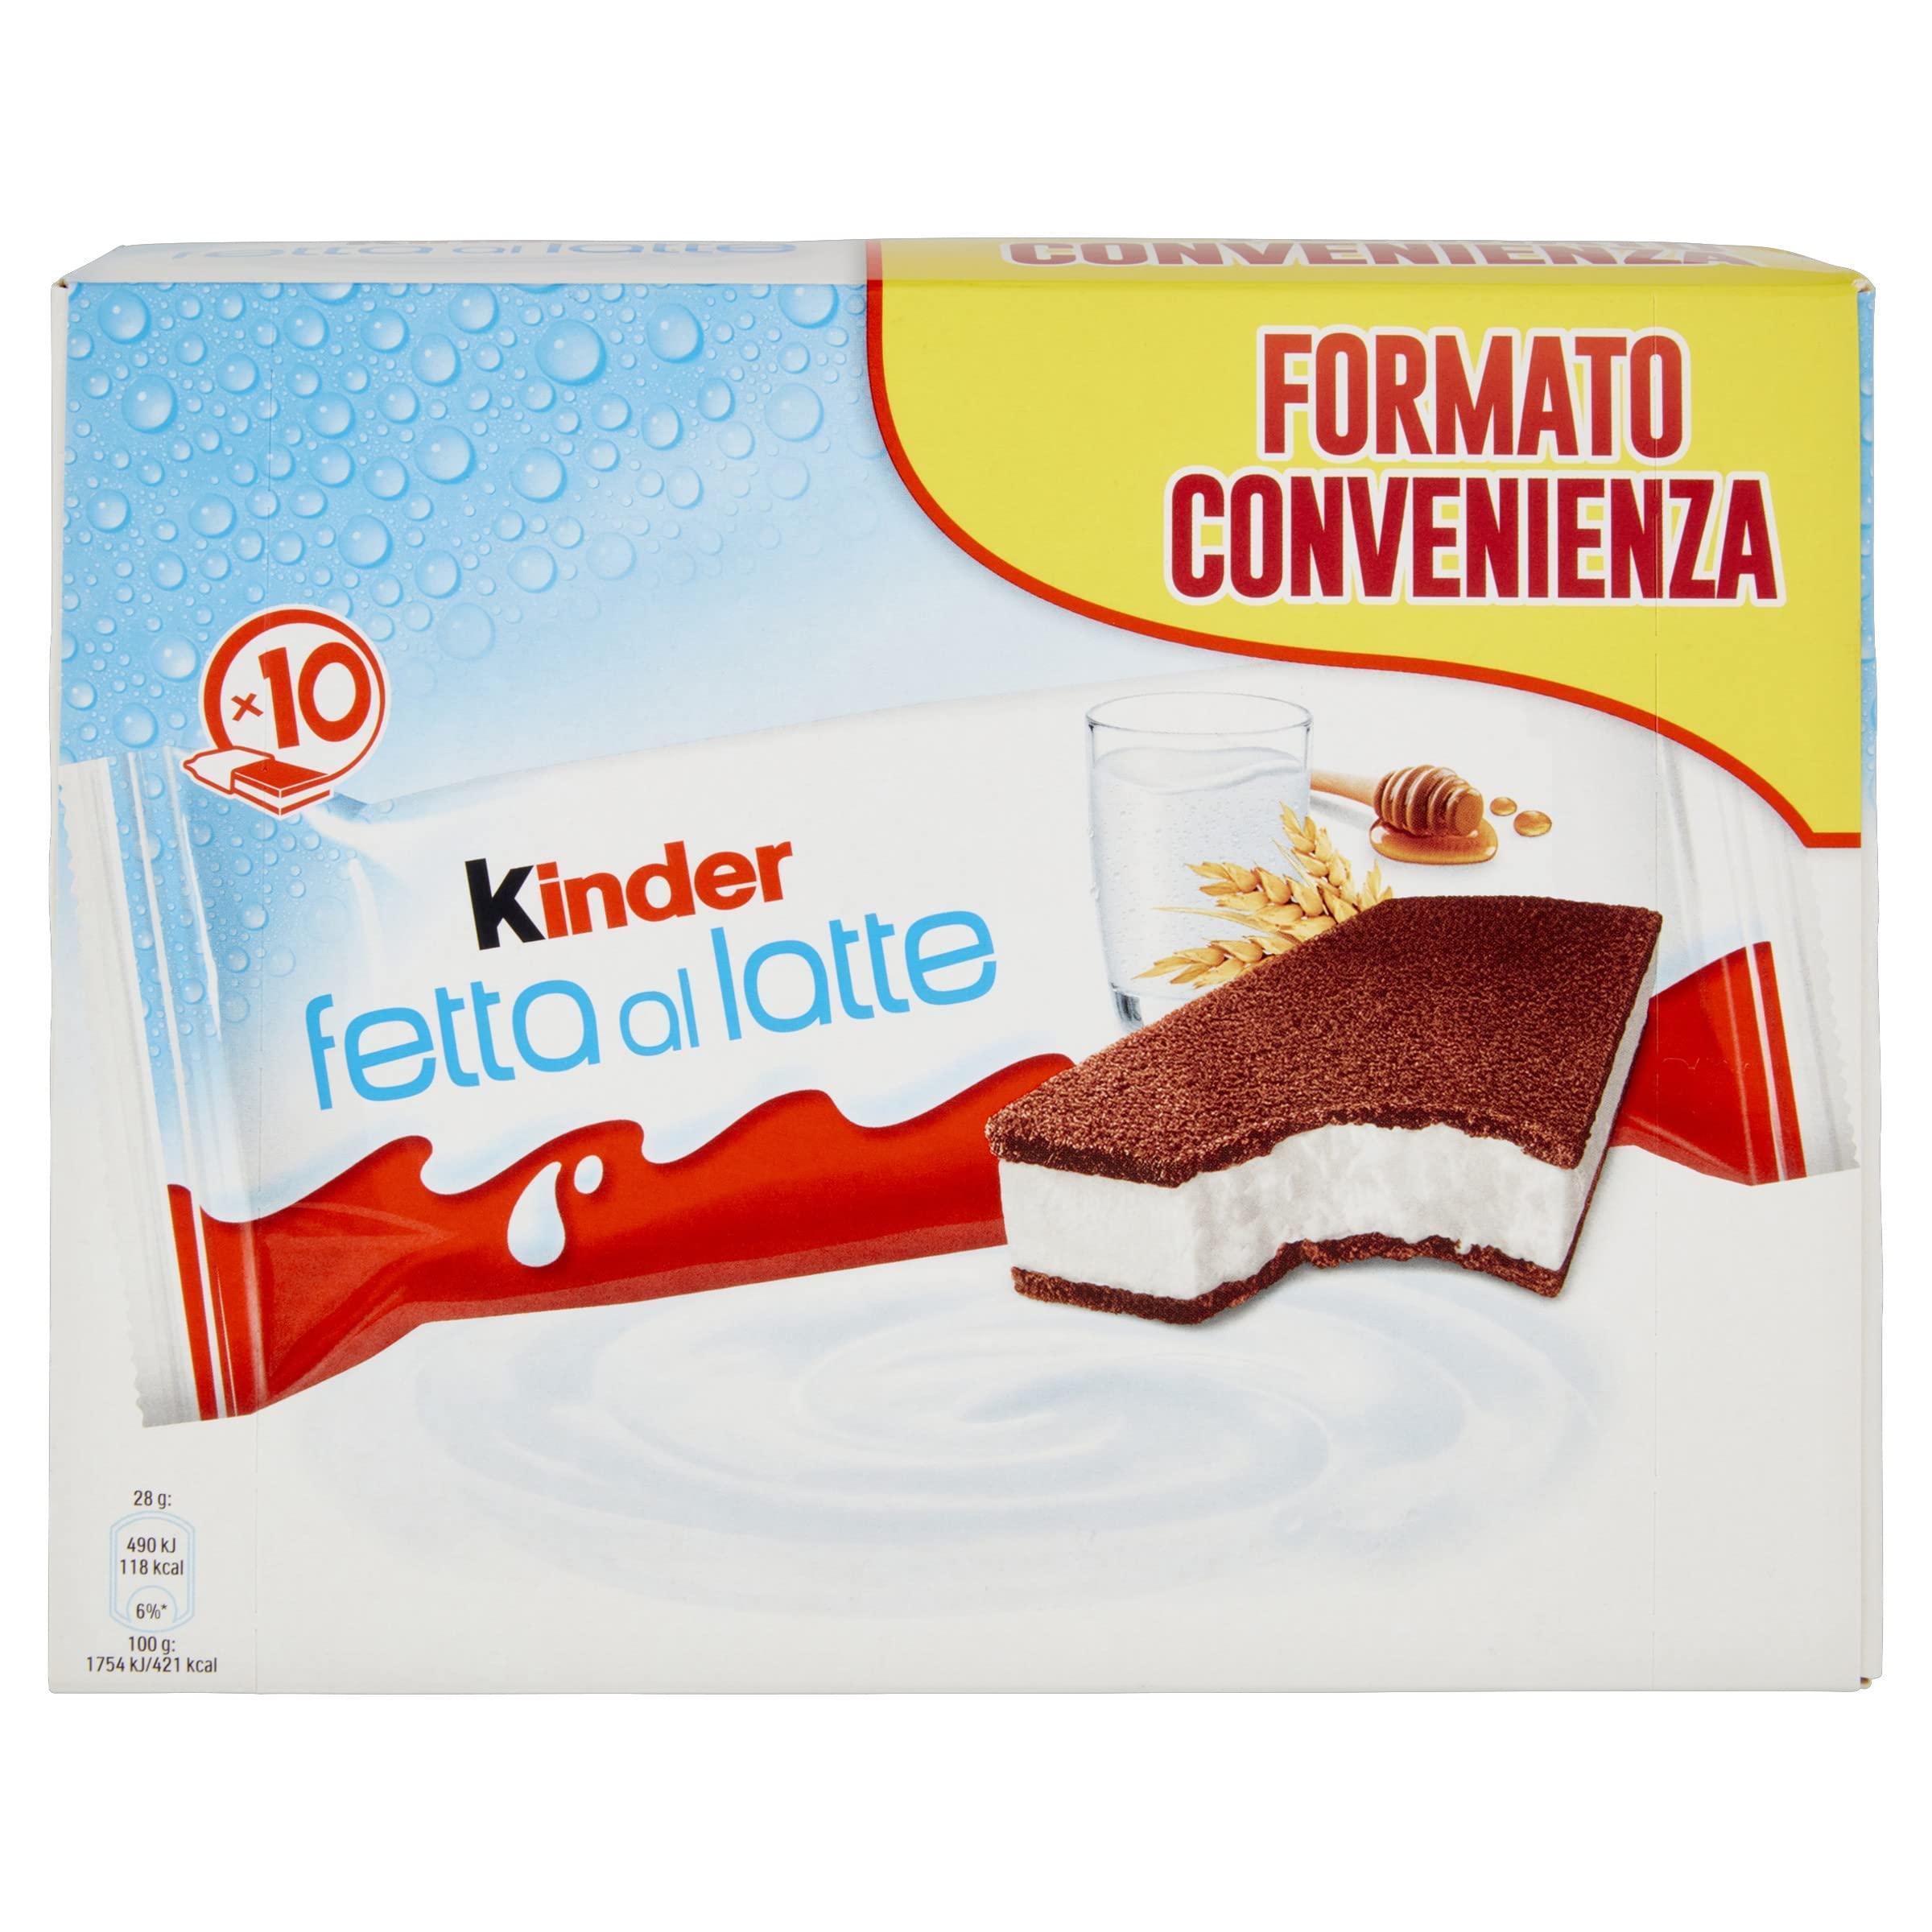 merendina-fetta-al-latte-kinder-280gr-1